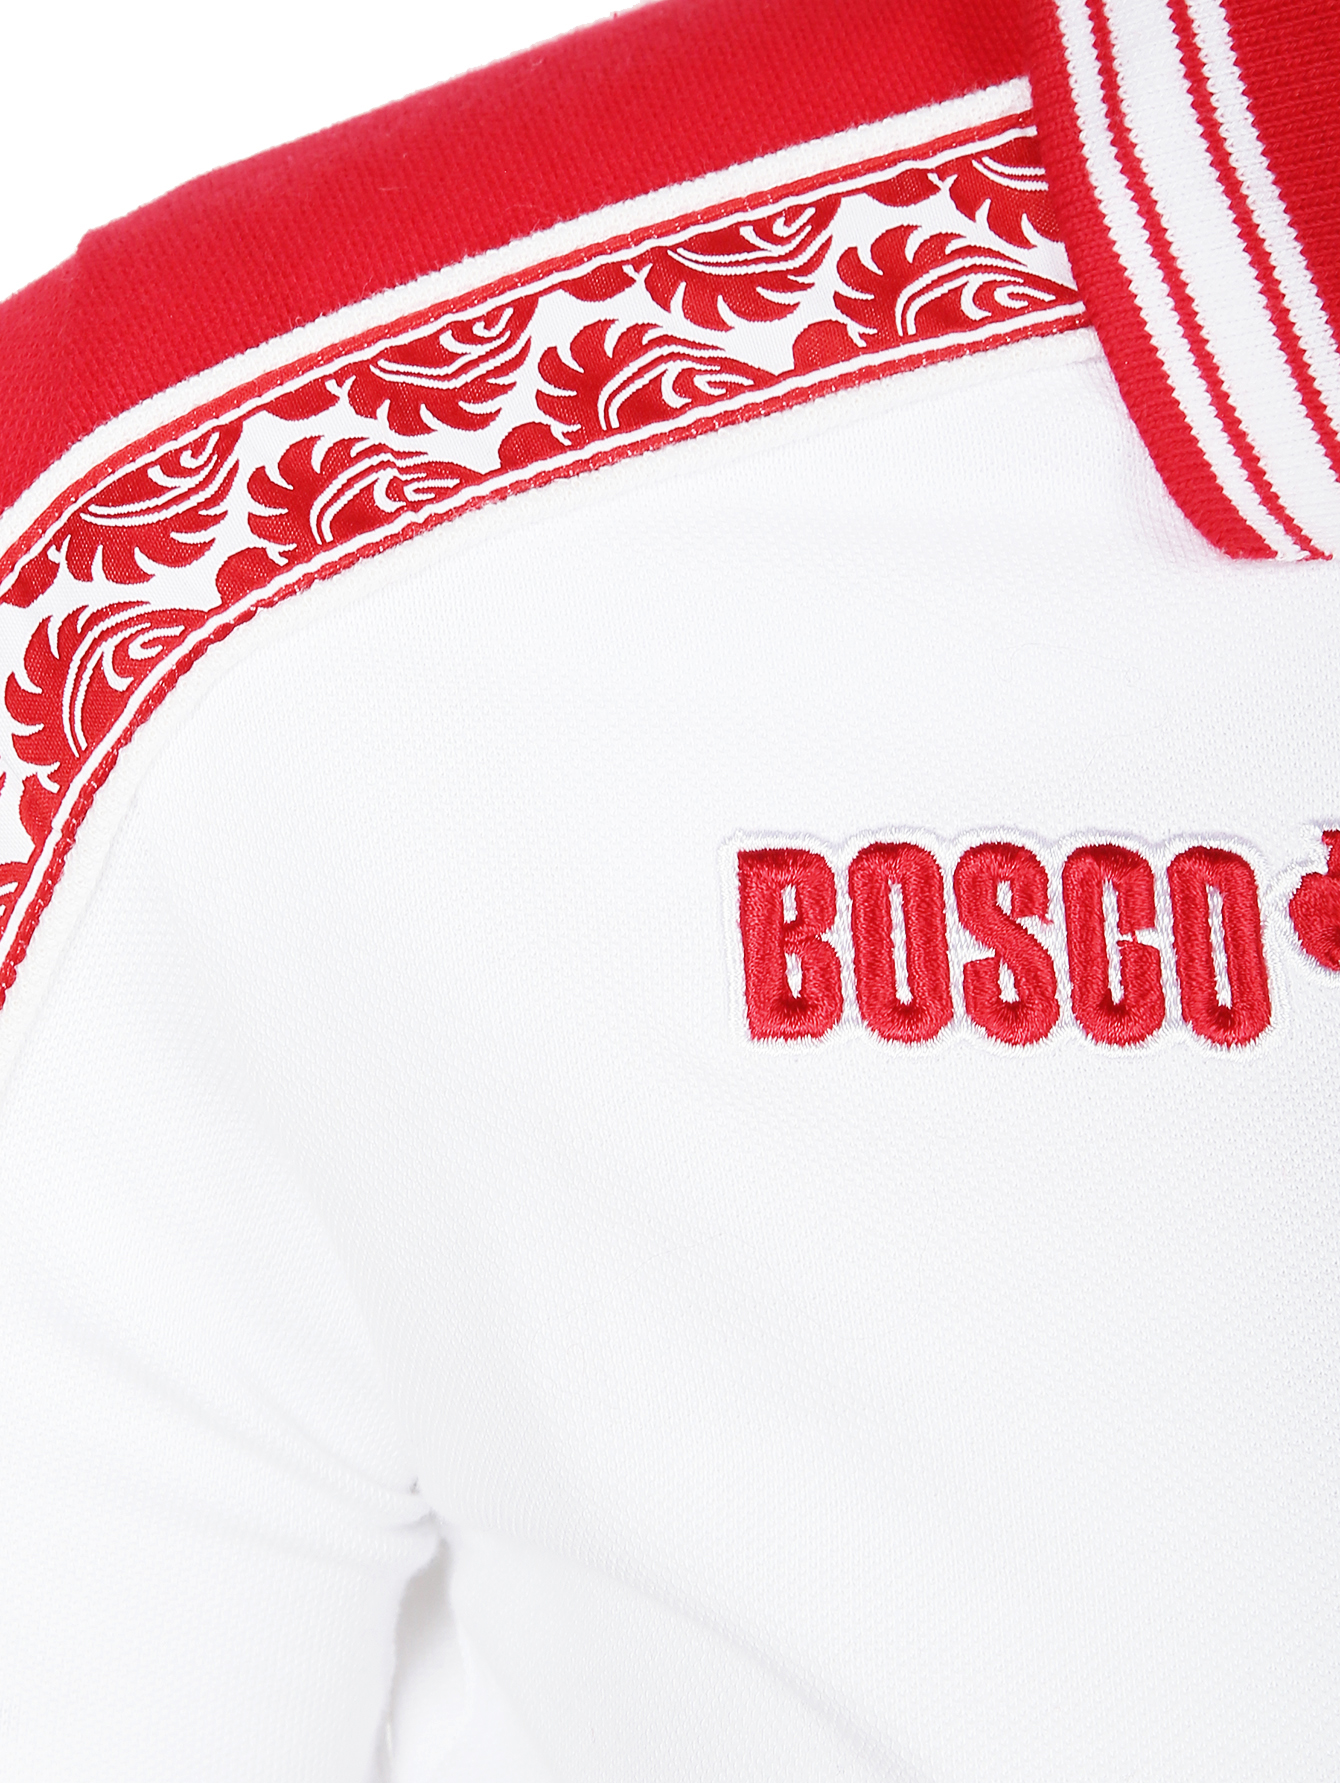 Боско чья. Боско (2024) Bosco. Боско спорт 1996. Bosco Sport 20005. Орнамент Боско.